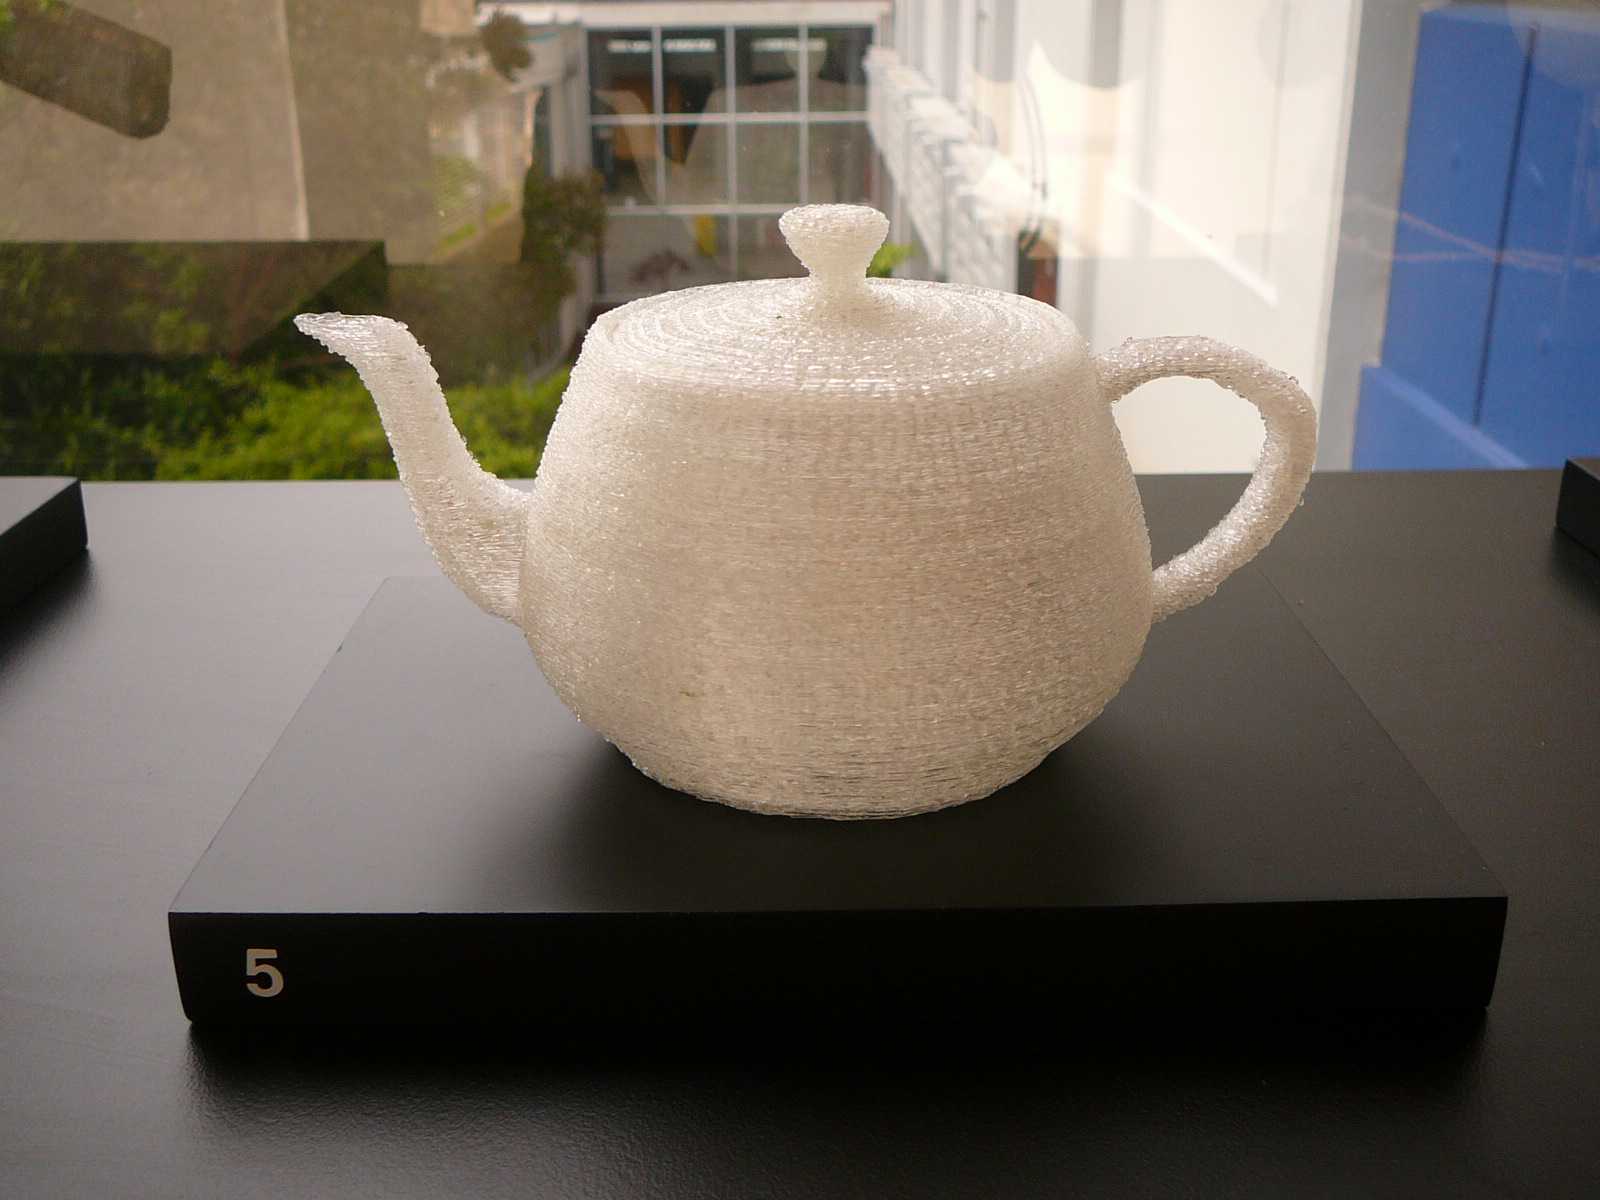 05 utah teapot